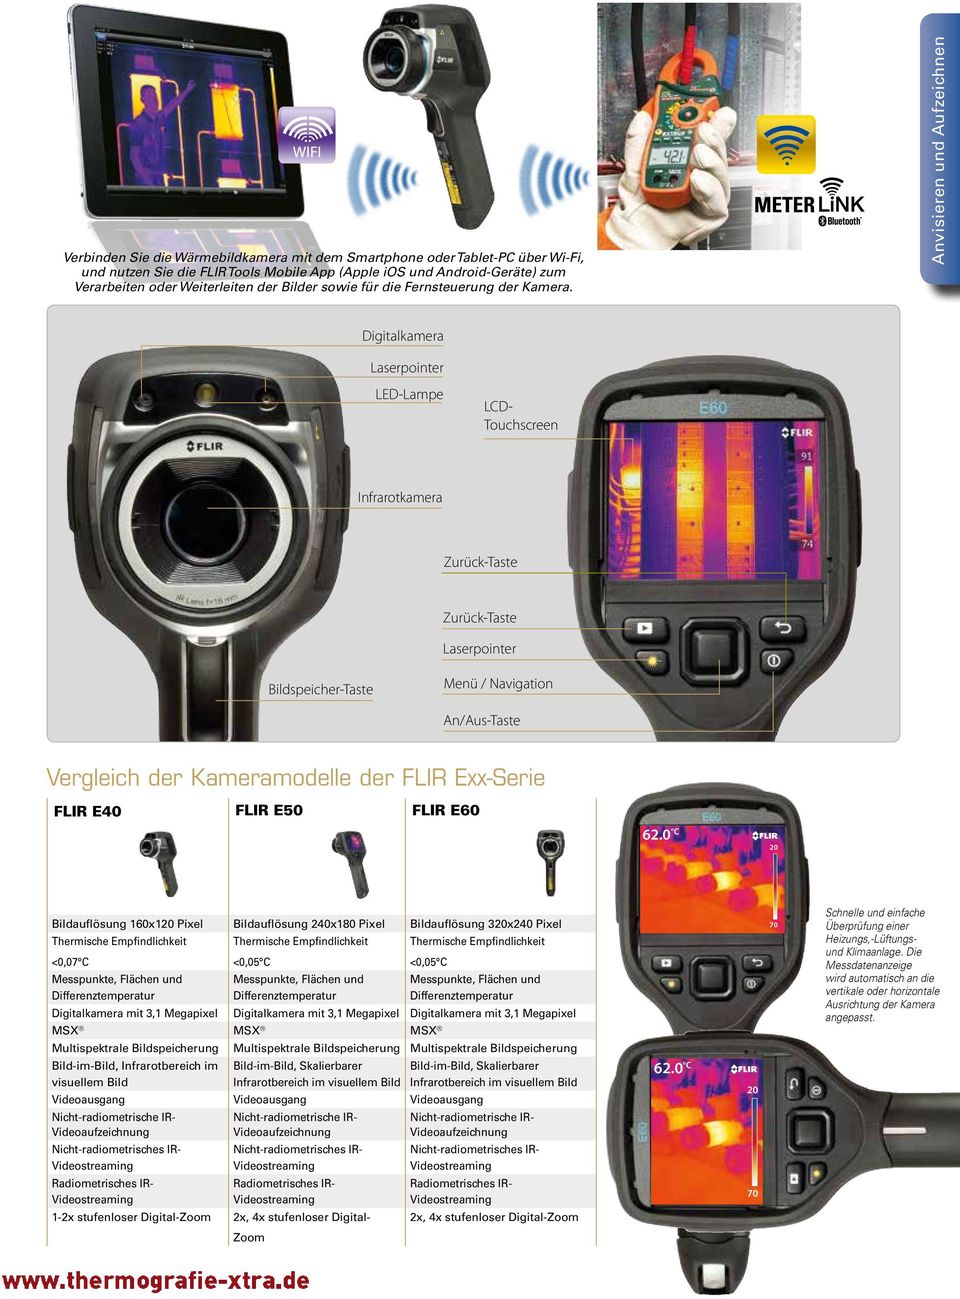 Anvisieren und Aufzeichnen Digitalkamera LED-Lampe LCD- Touchscreen Infrarotkamera Zurück-Taste Zurück-Taste Bildspeicher-Taste Menü / Navigation An/Aus-Taste Vergleich der Kameramodelle der FLIR